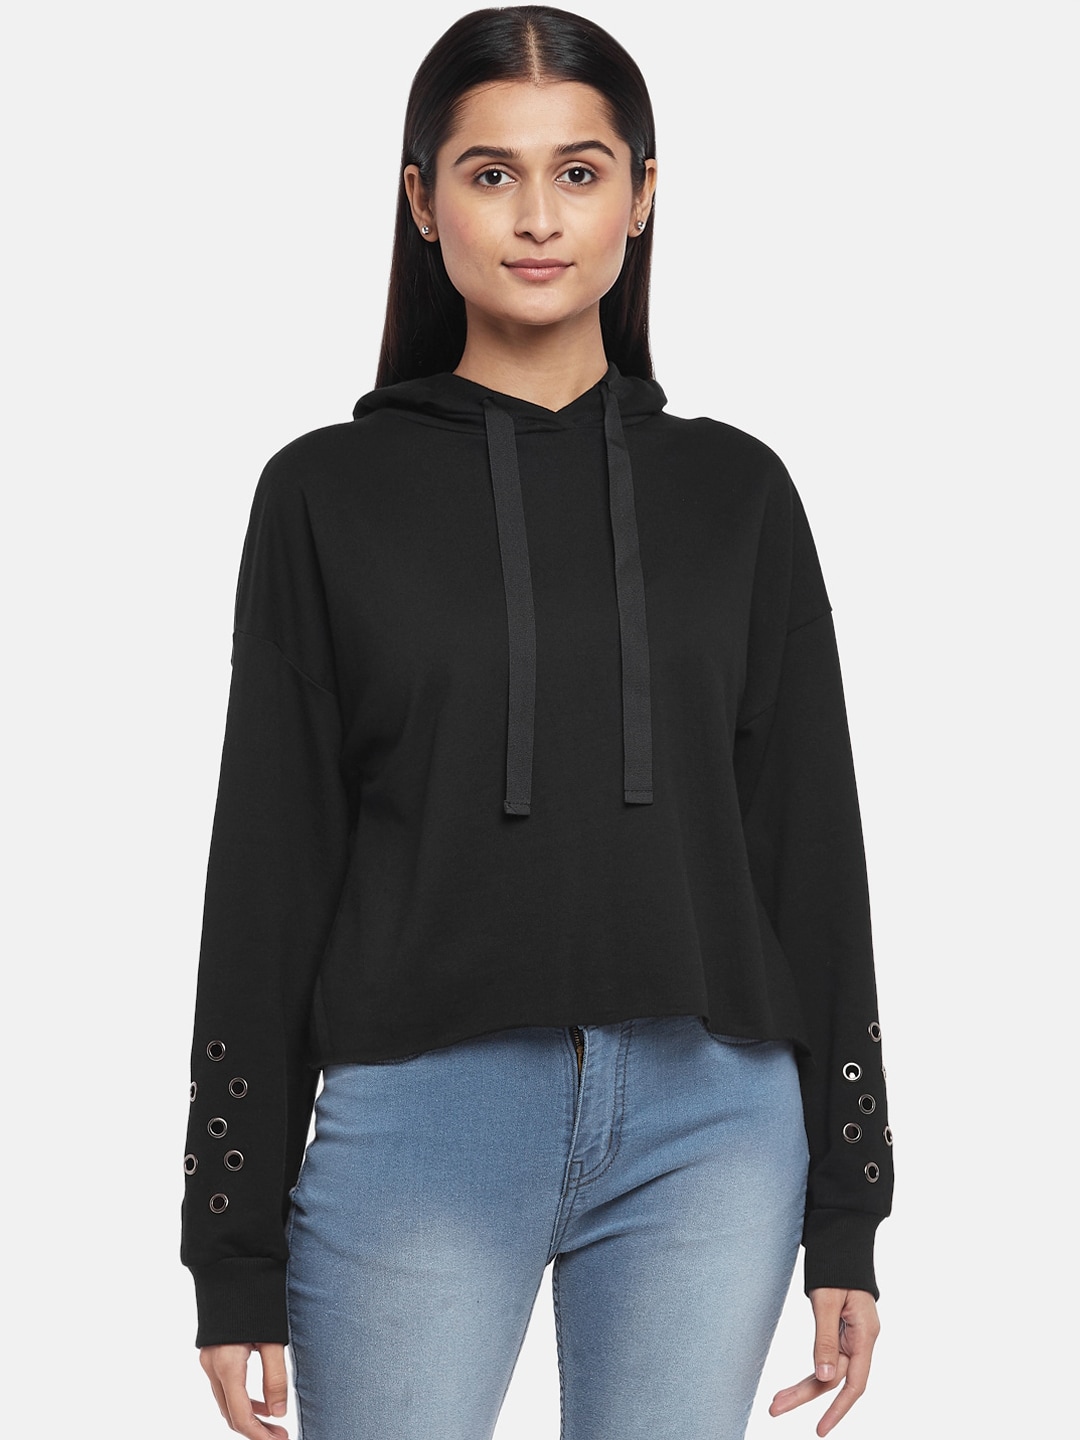 People Women Black Hooded Sweatshirt Price in India